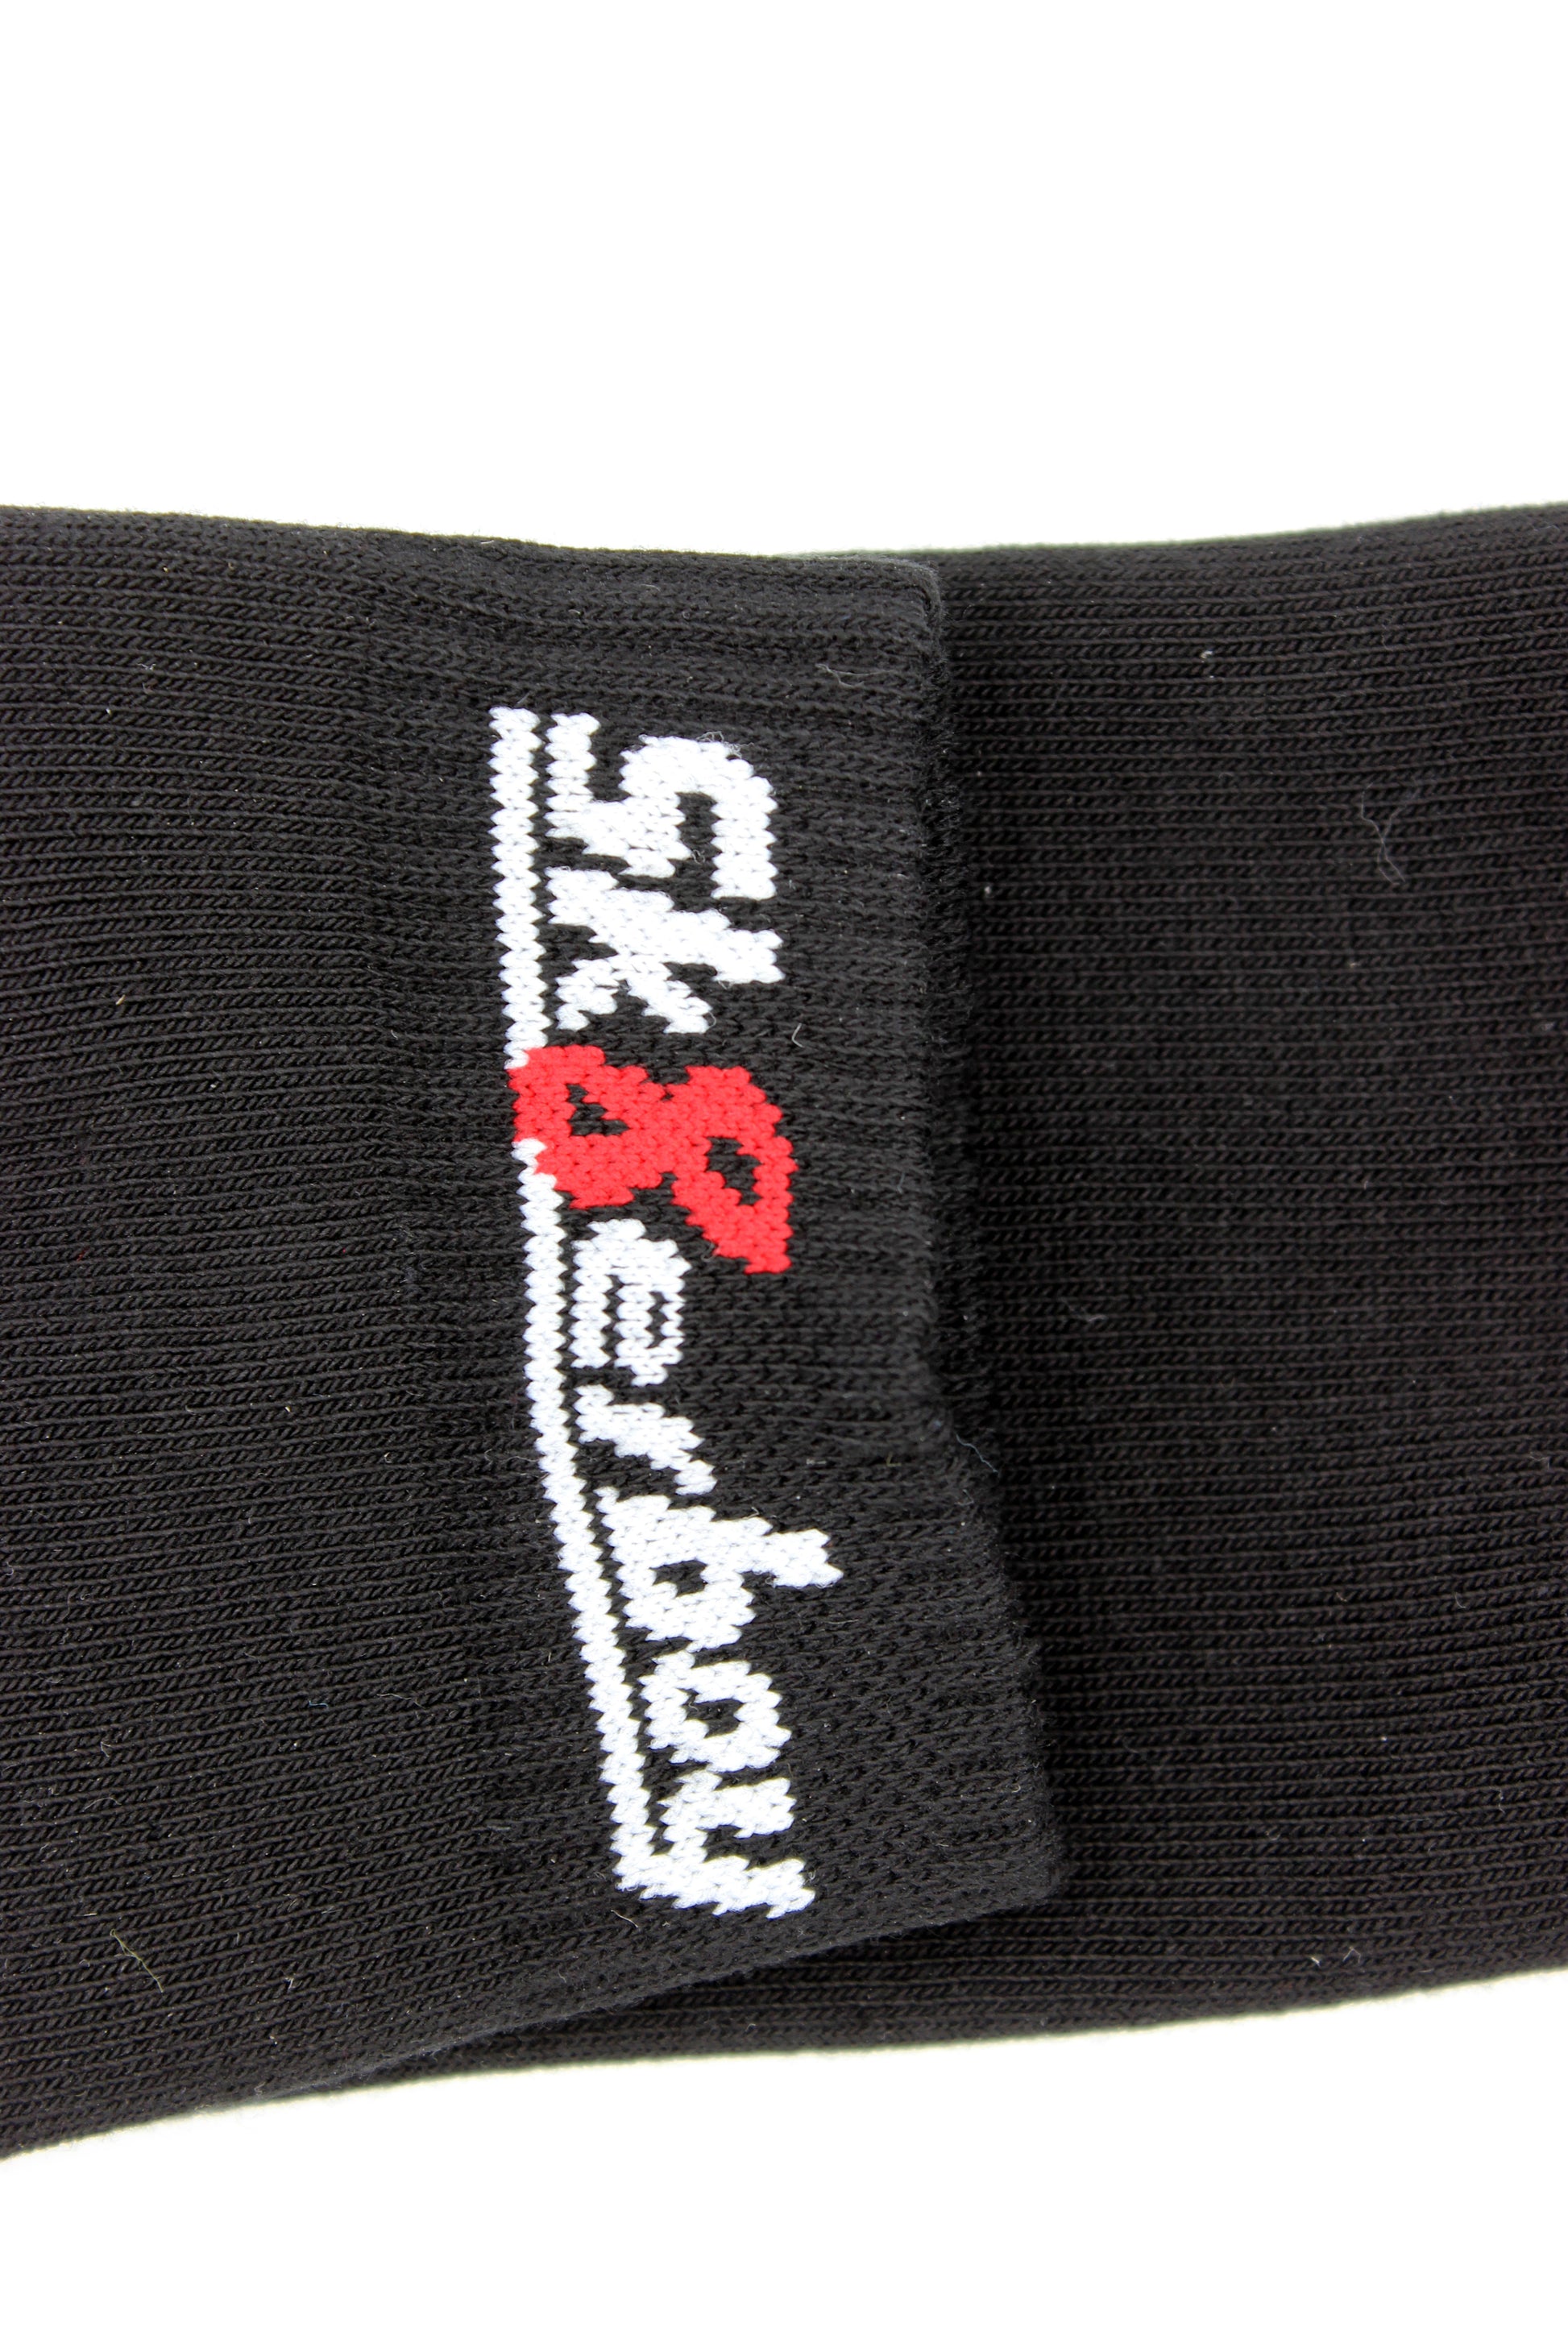 schwarze quarter socks von sk8erboy mit logo am bund und auf der unterseite in nahaufnahme